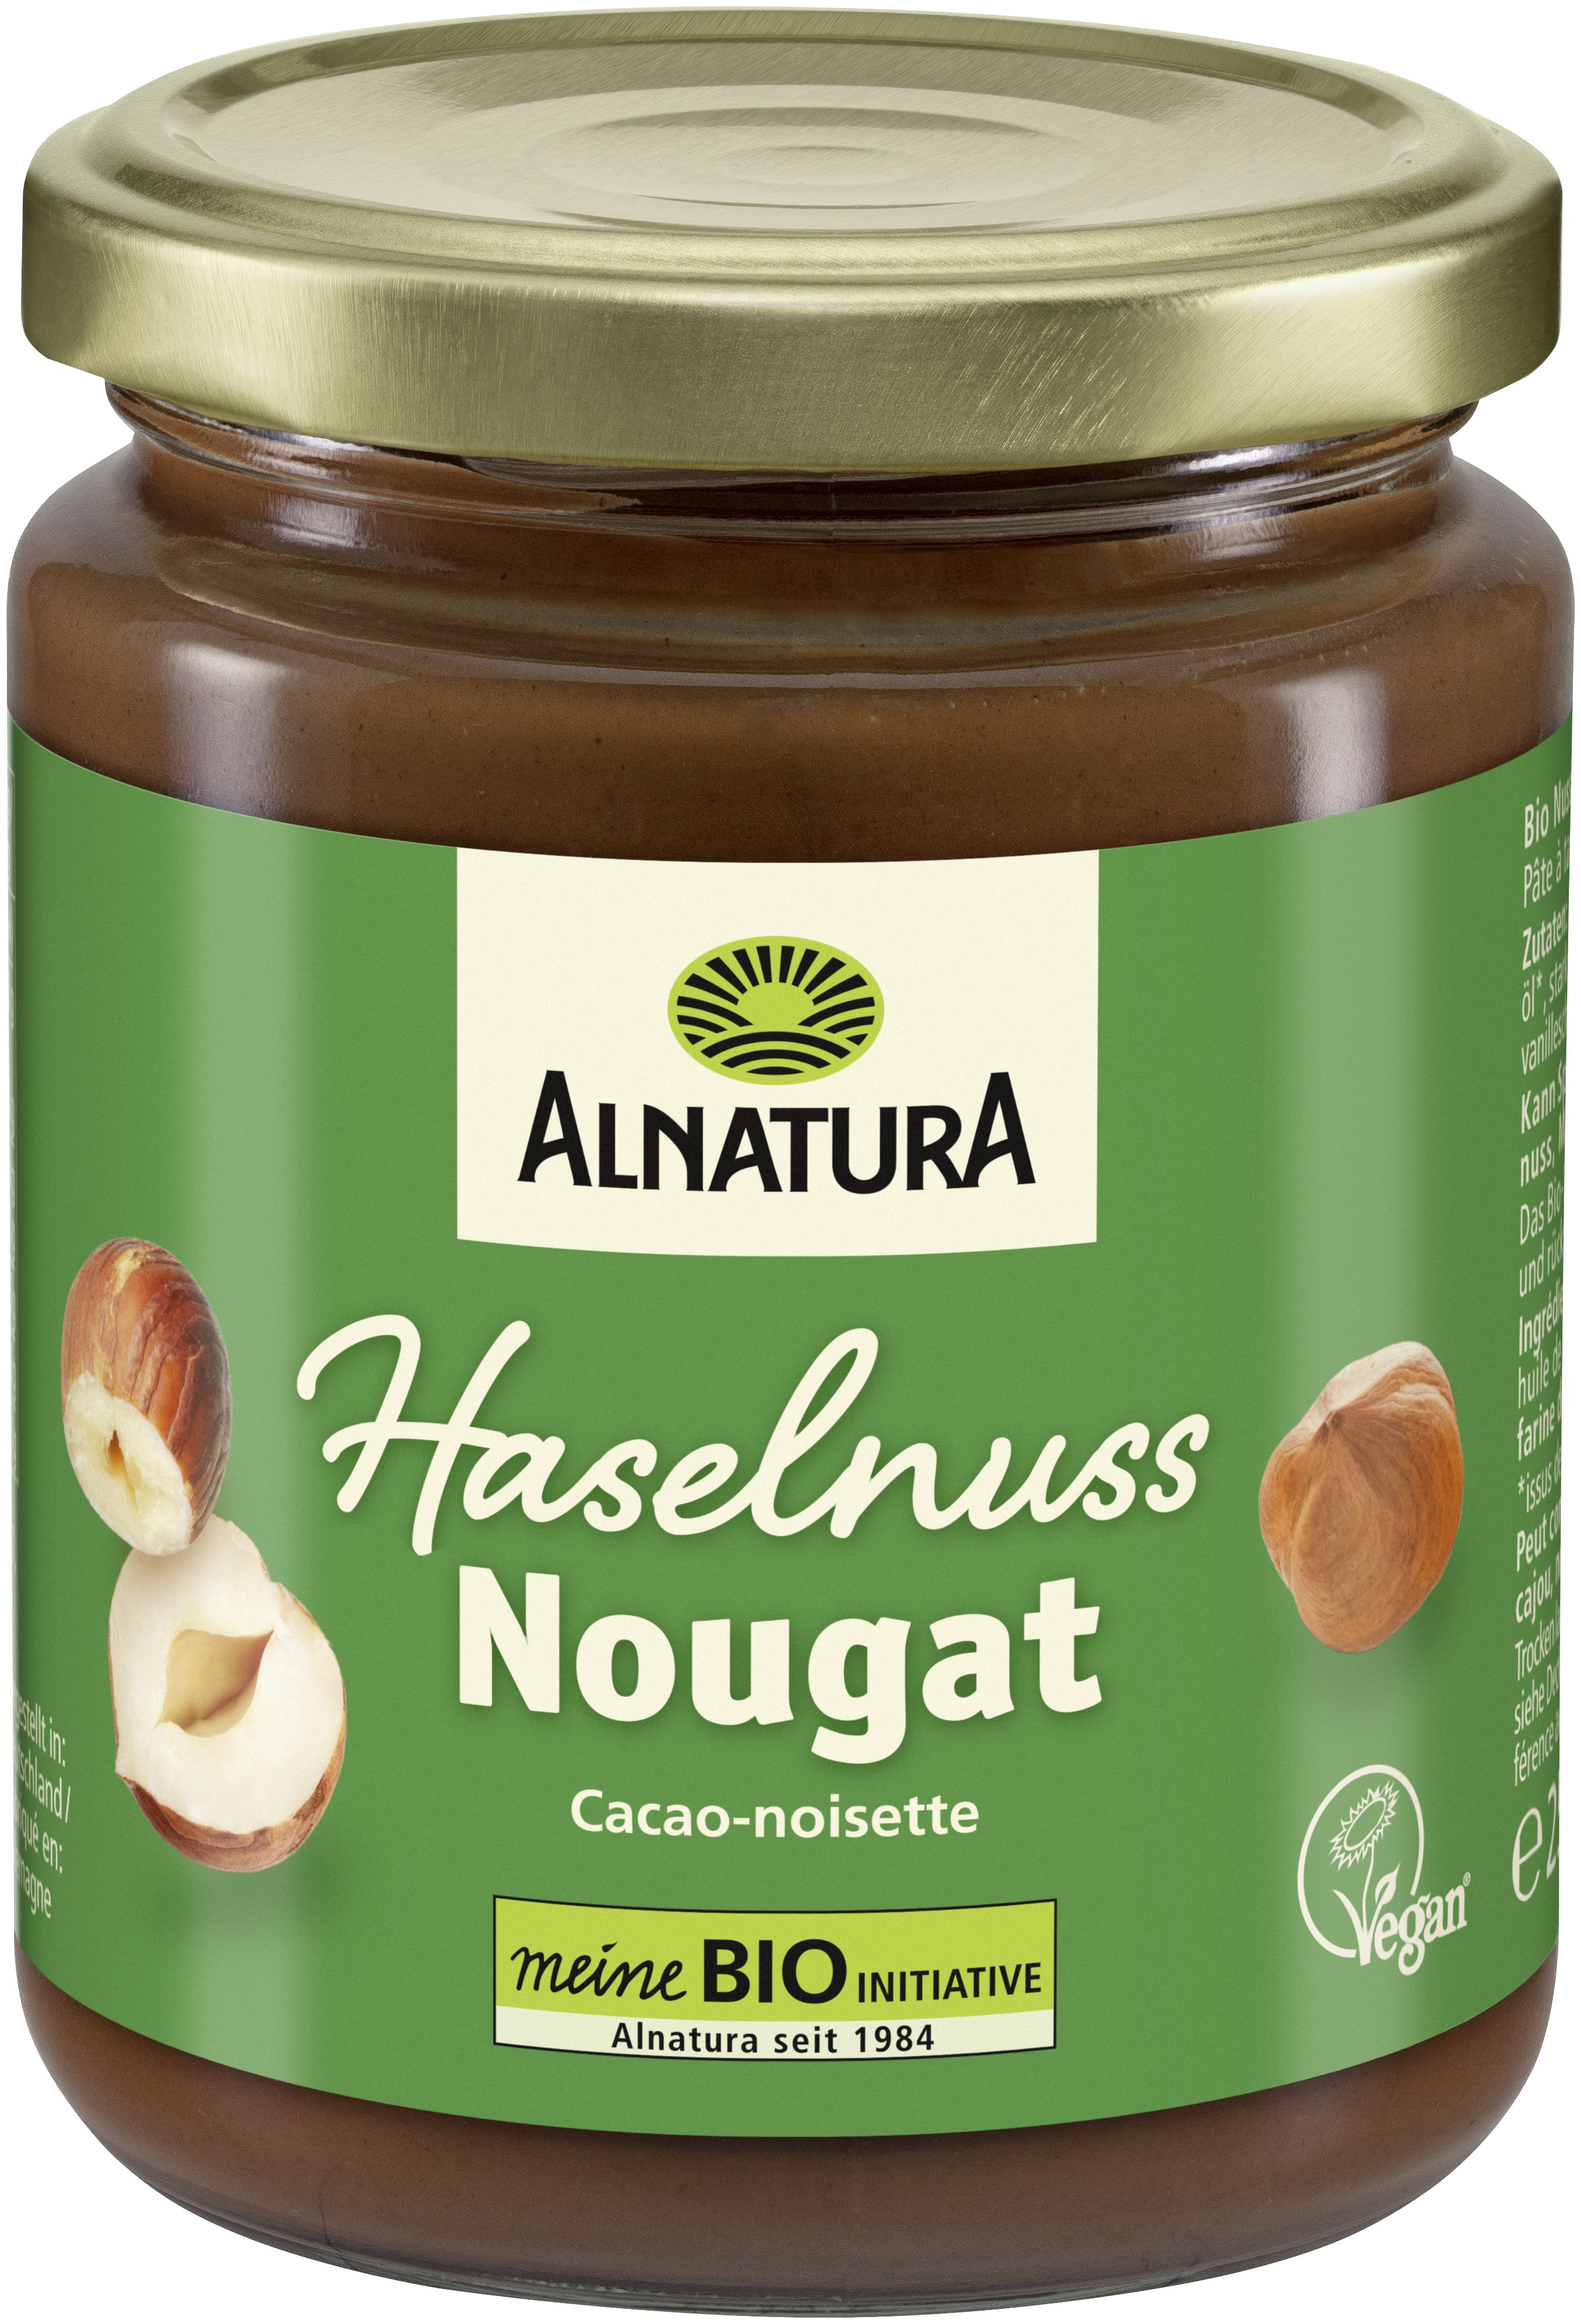 Haselnuss-Nougat-Creme, vegane Rezeptur (250 g) in Bio-Qualität von ...